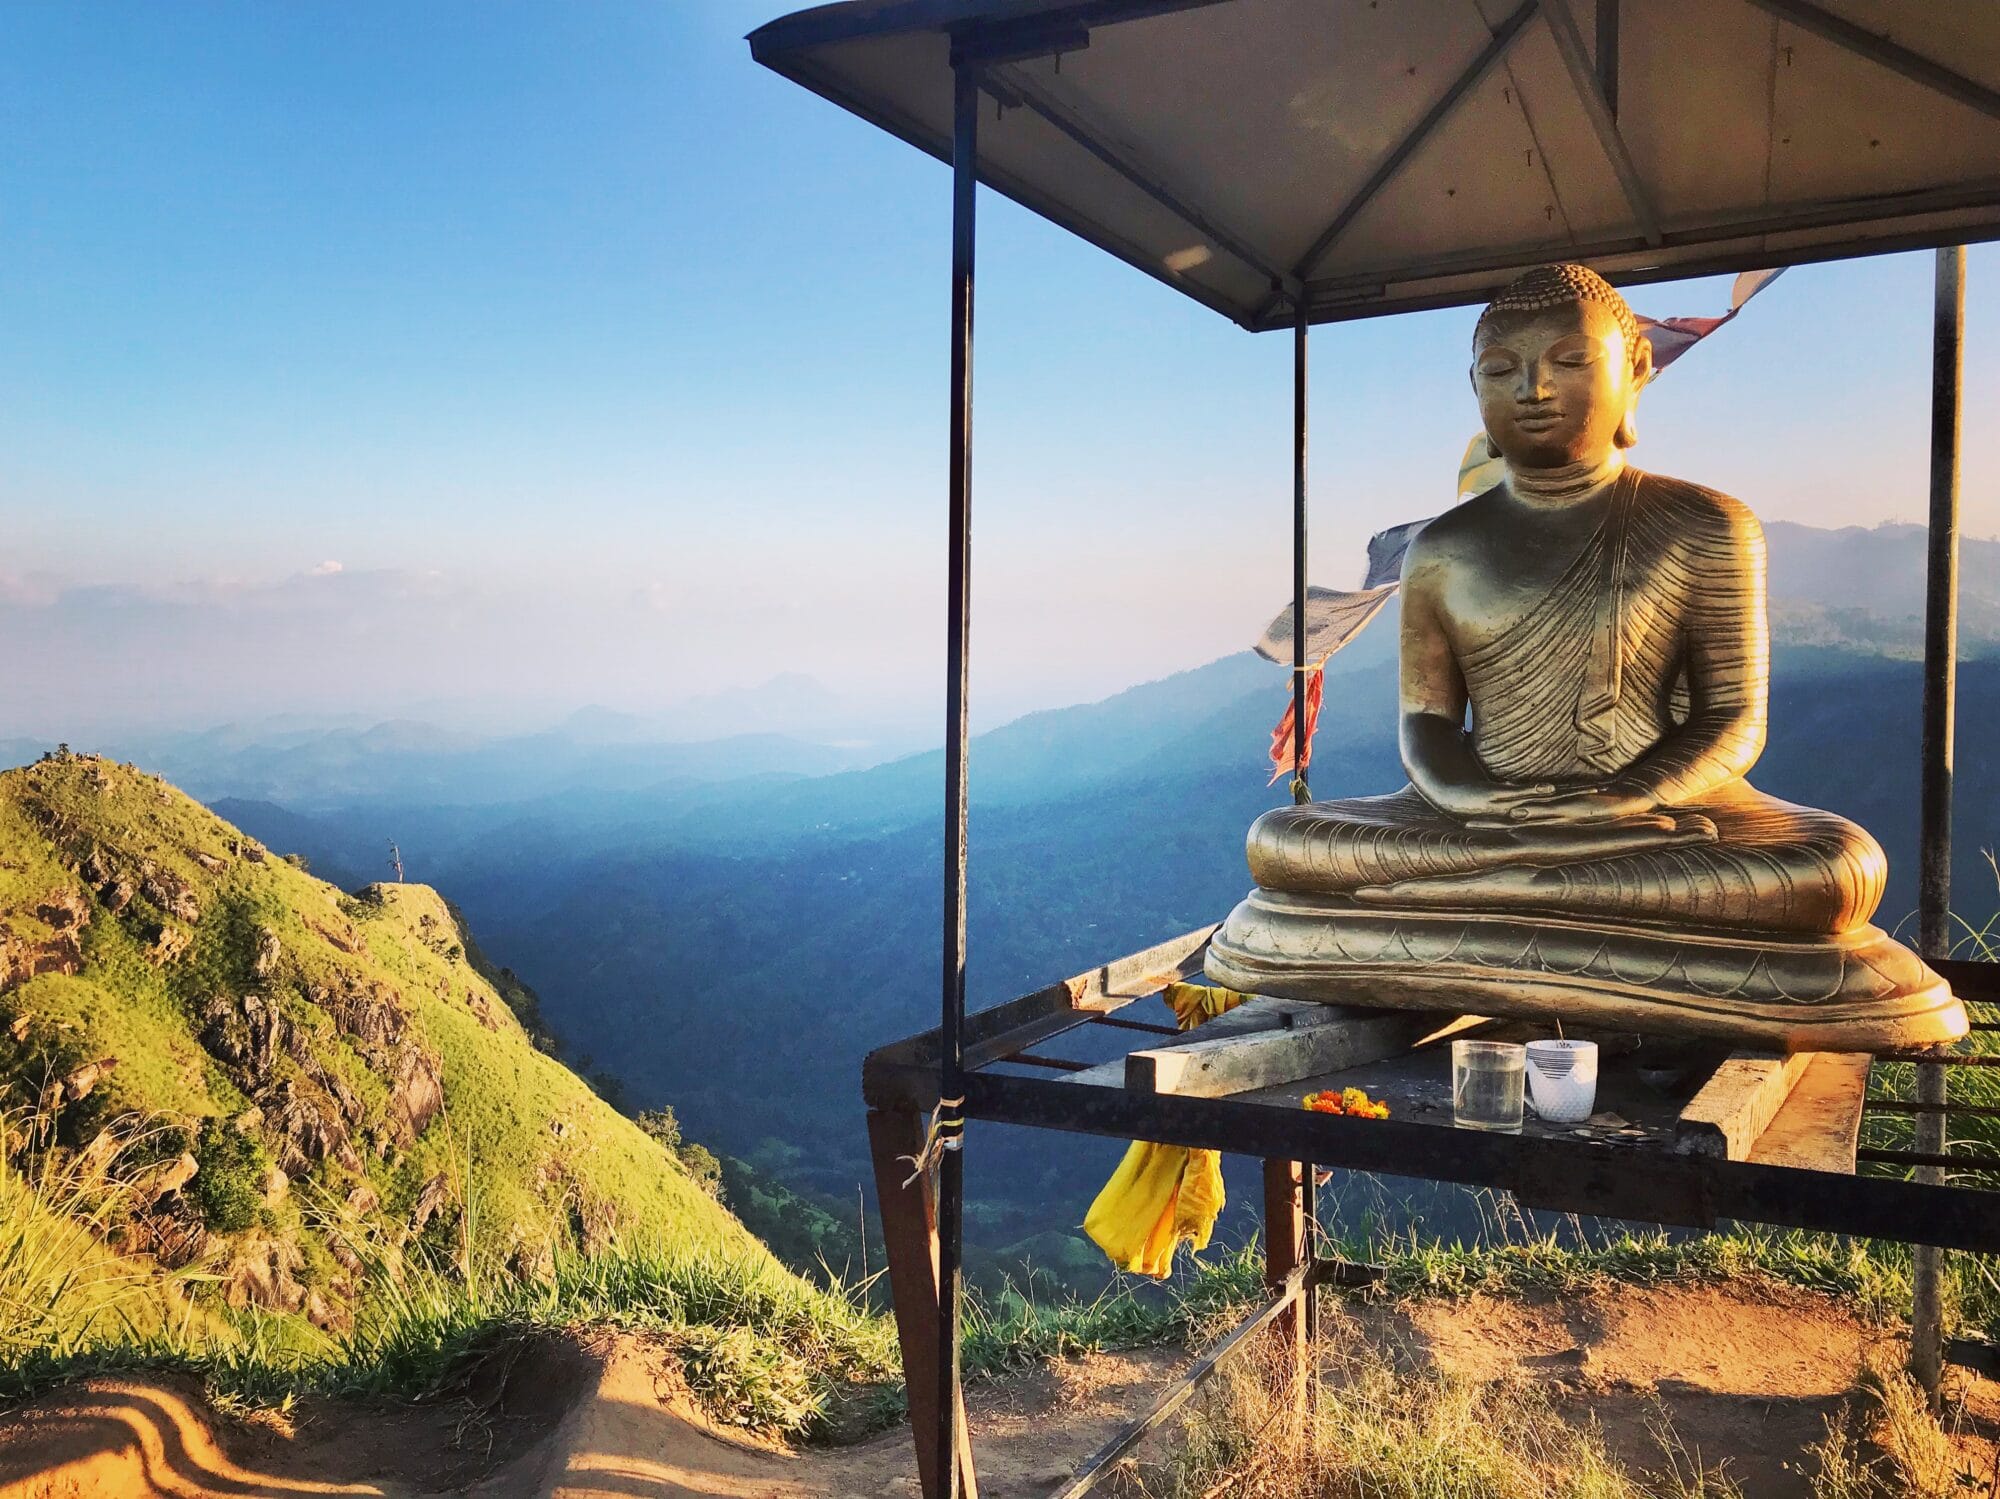 Sri Lanka’s Highland – A Two Days Trip to Ella